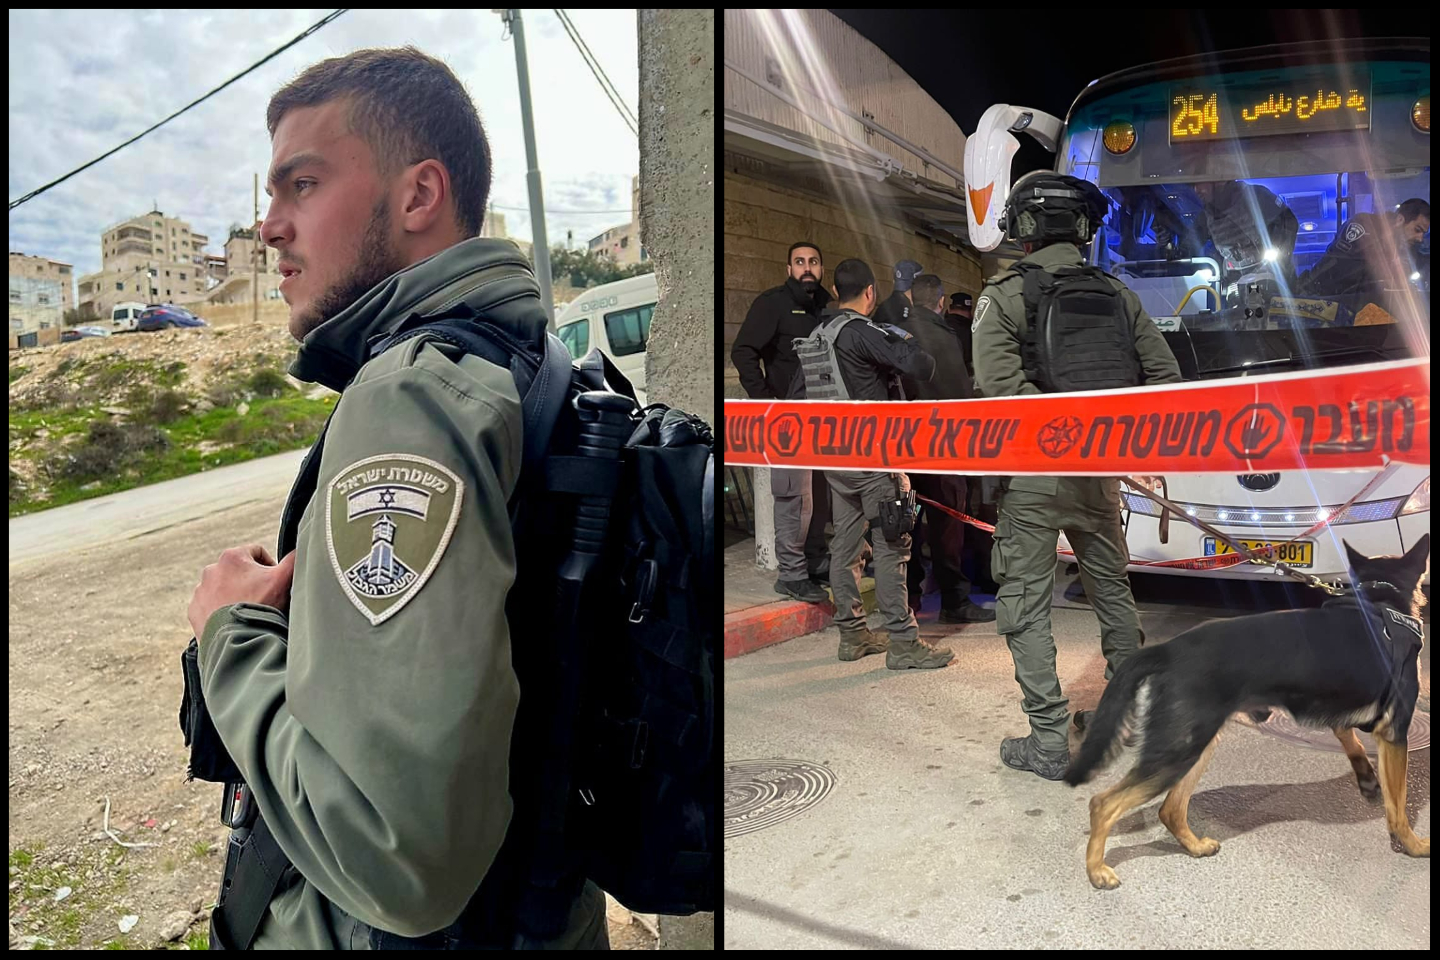 עוד ערב קשה בירושלים: לוחם מג"ב אסיל סואעד ז"ל נהרג בפיגוע דקירה במחסום שועפאט